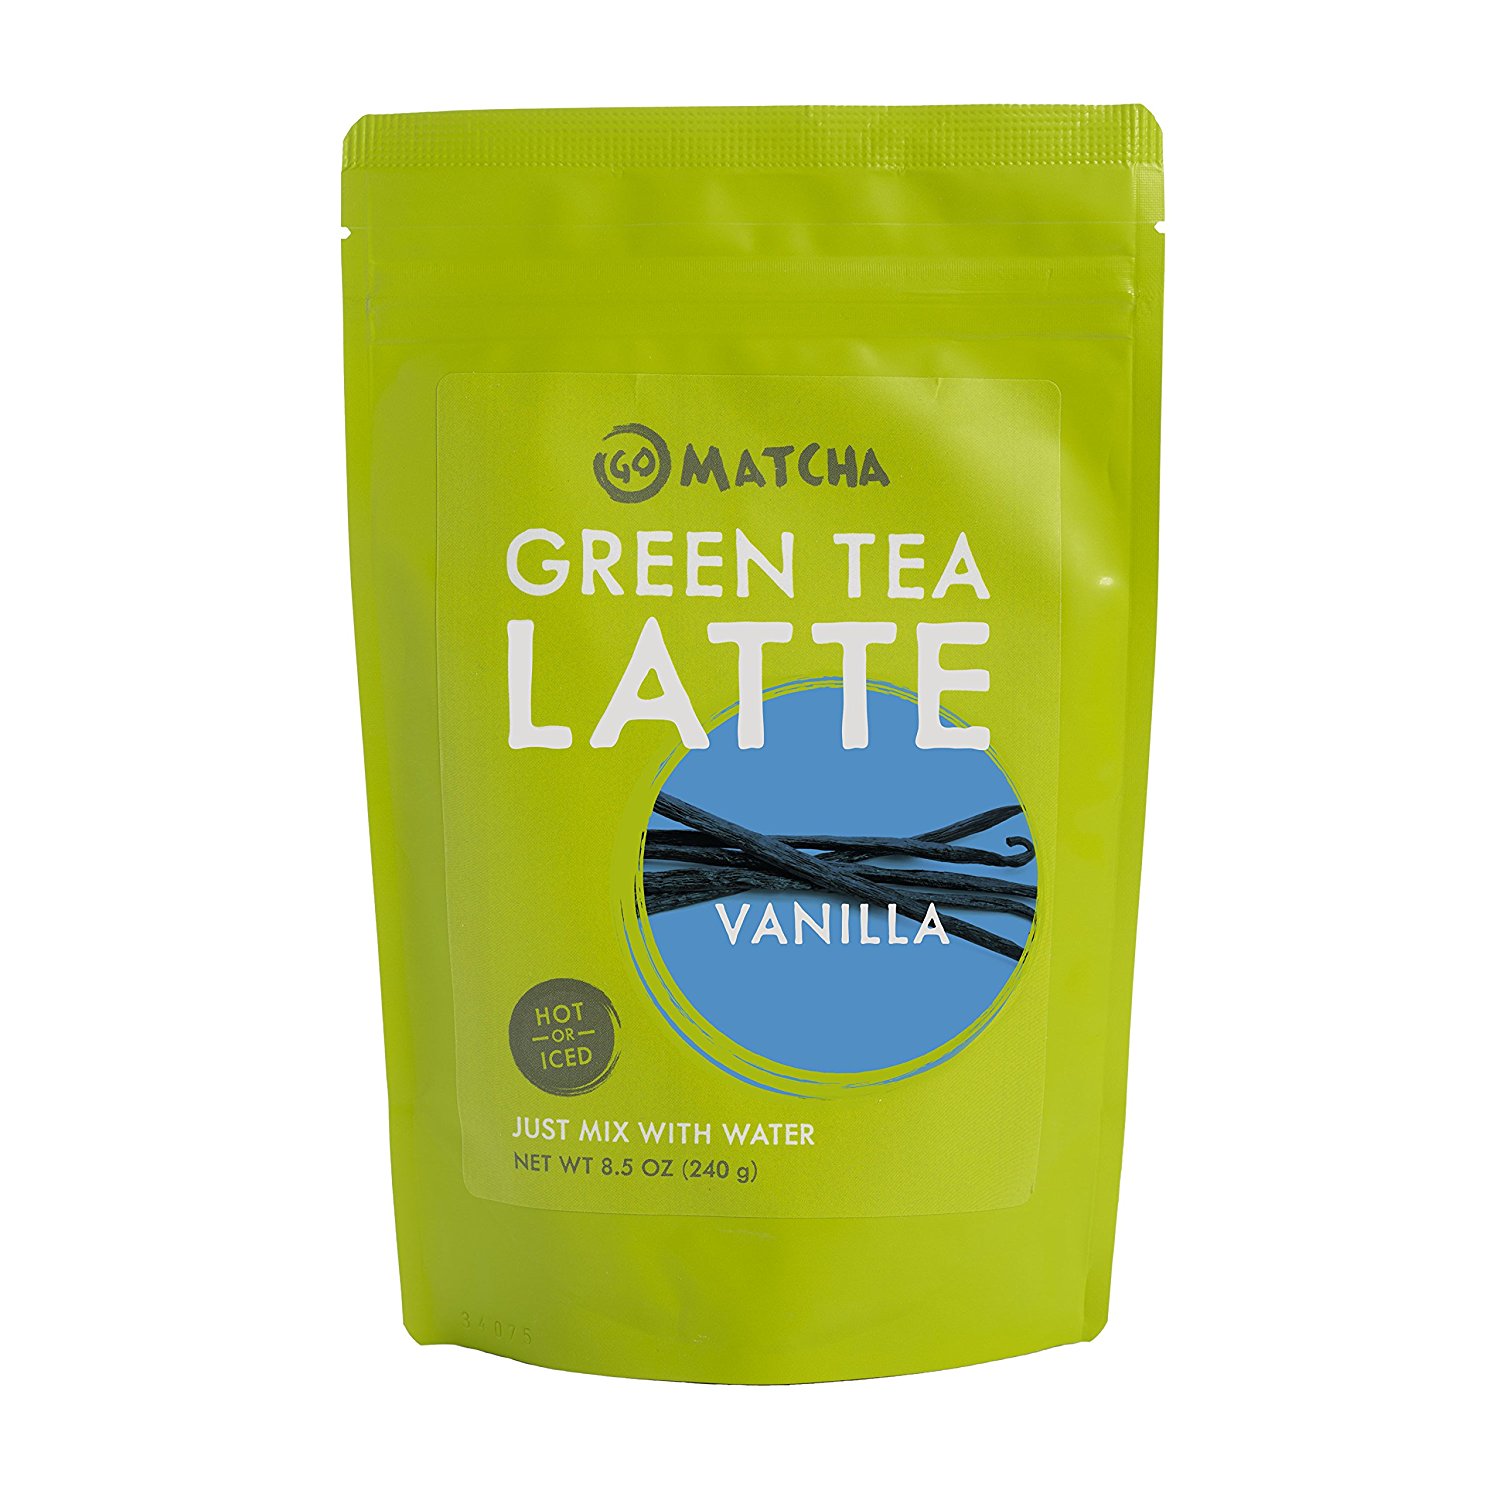 Go Matcha Green Tea Latte Vanilla 8.5 oz